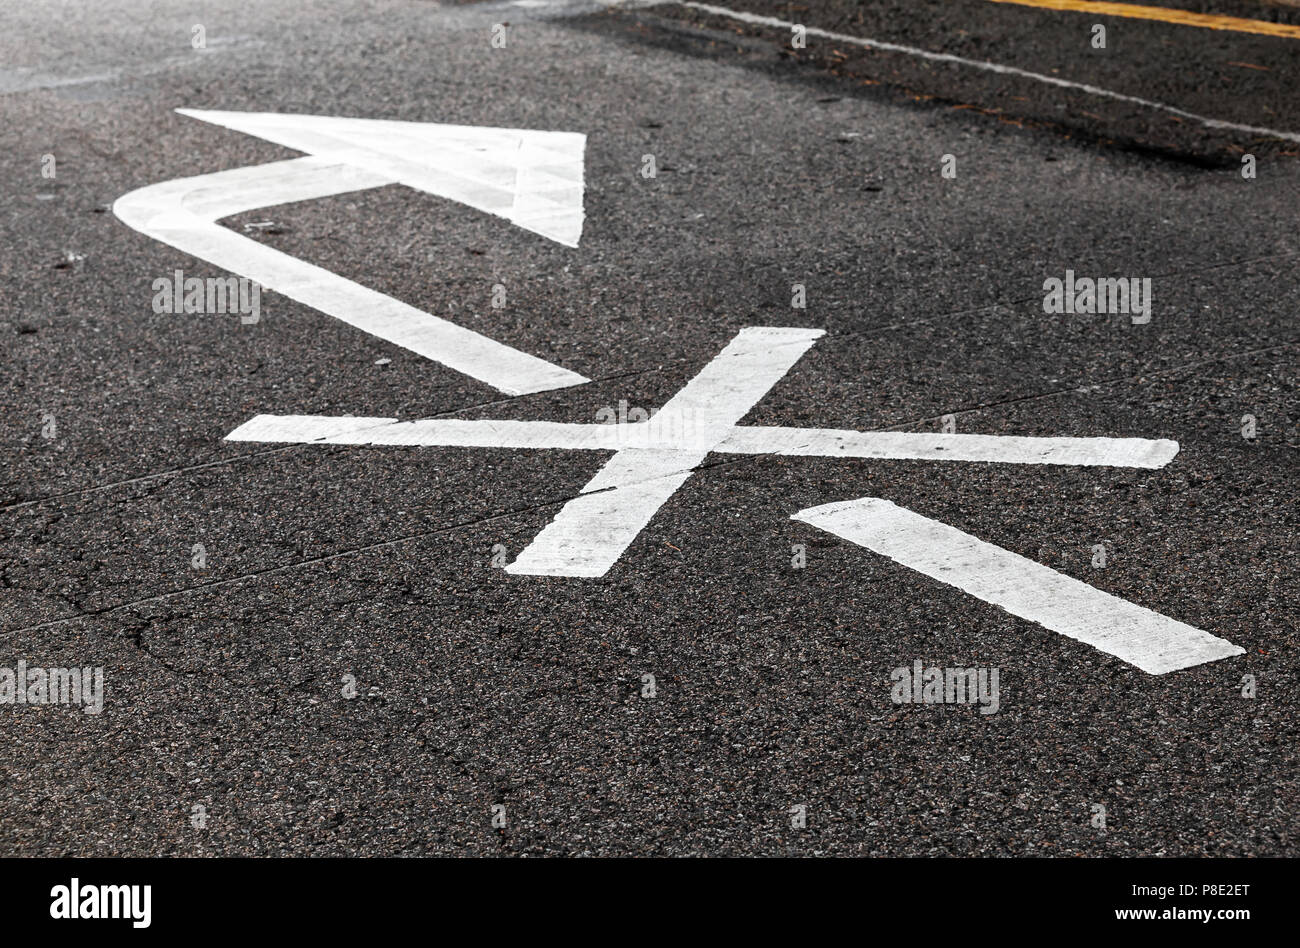 Rechts ist verboten. Weißer Pfeil, Straßen Markierung über schwarze Landstraße Asphalt gekreuzt. Nahaufnahme mit selektiven Fokus Stockfoto